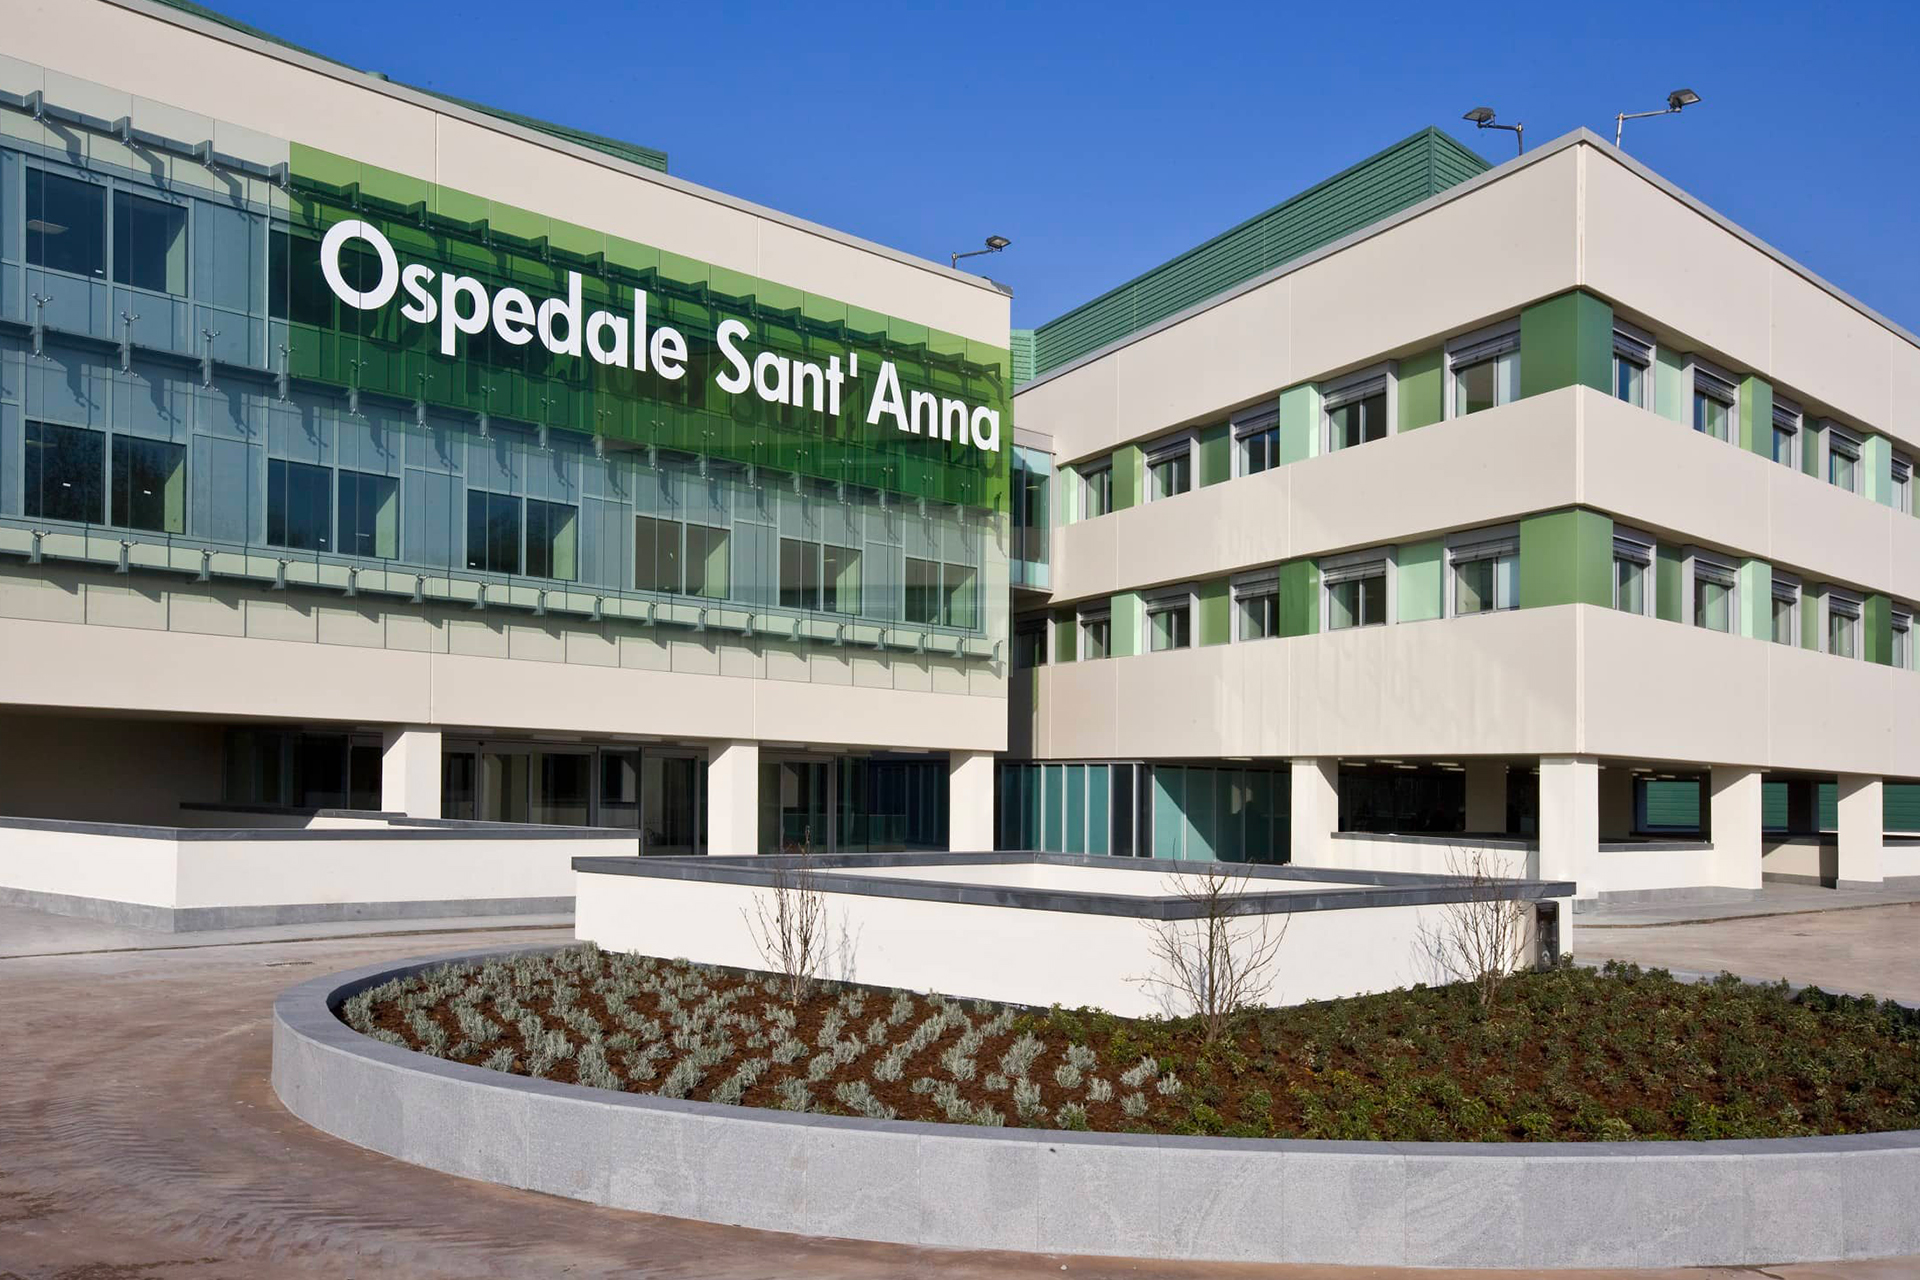 Le sezioni Federcaccia Como della Valle d’Intelvi donano mille euro all’Ospedale Sant’ Anna